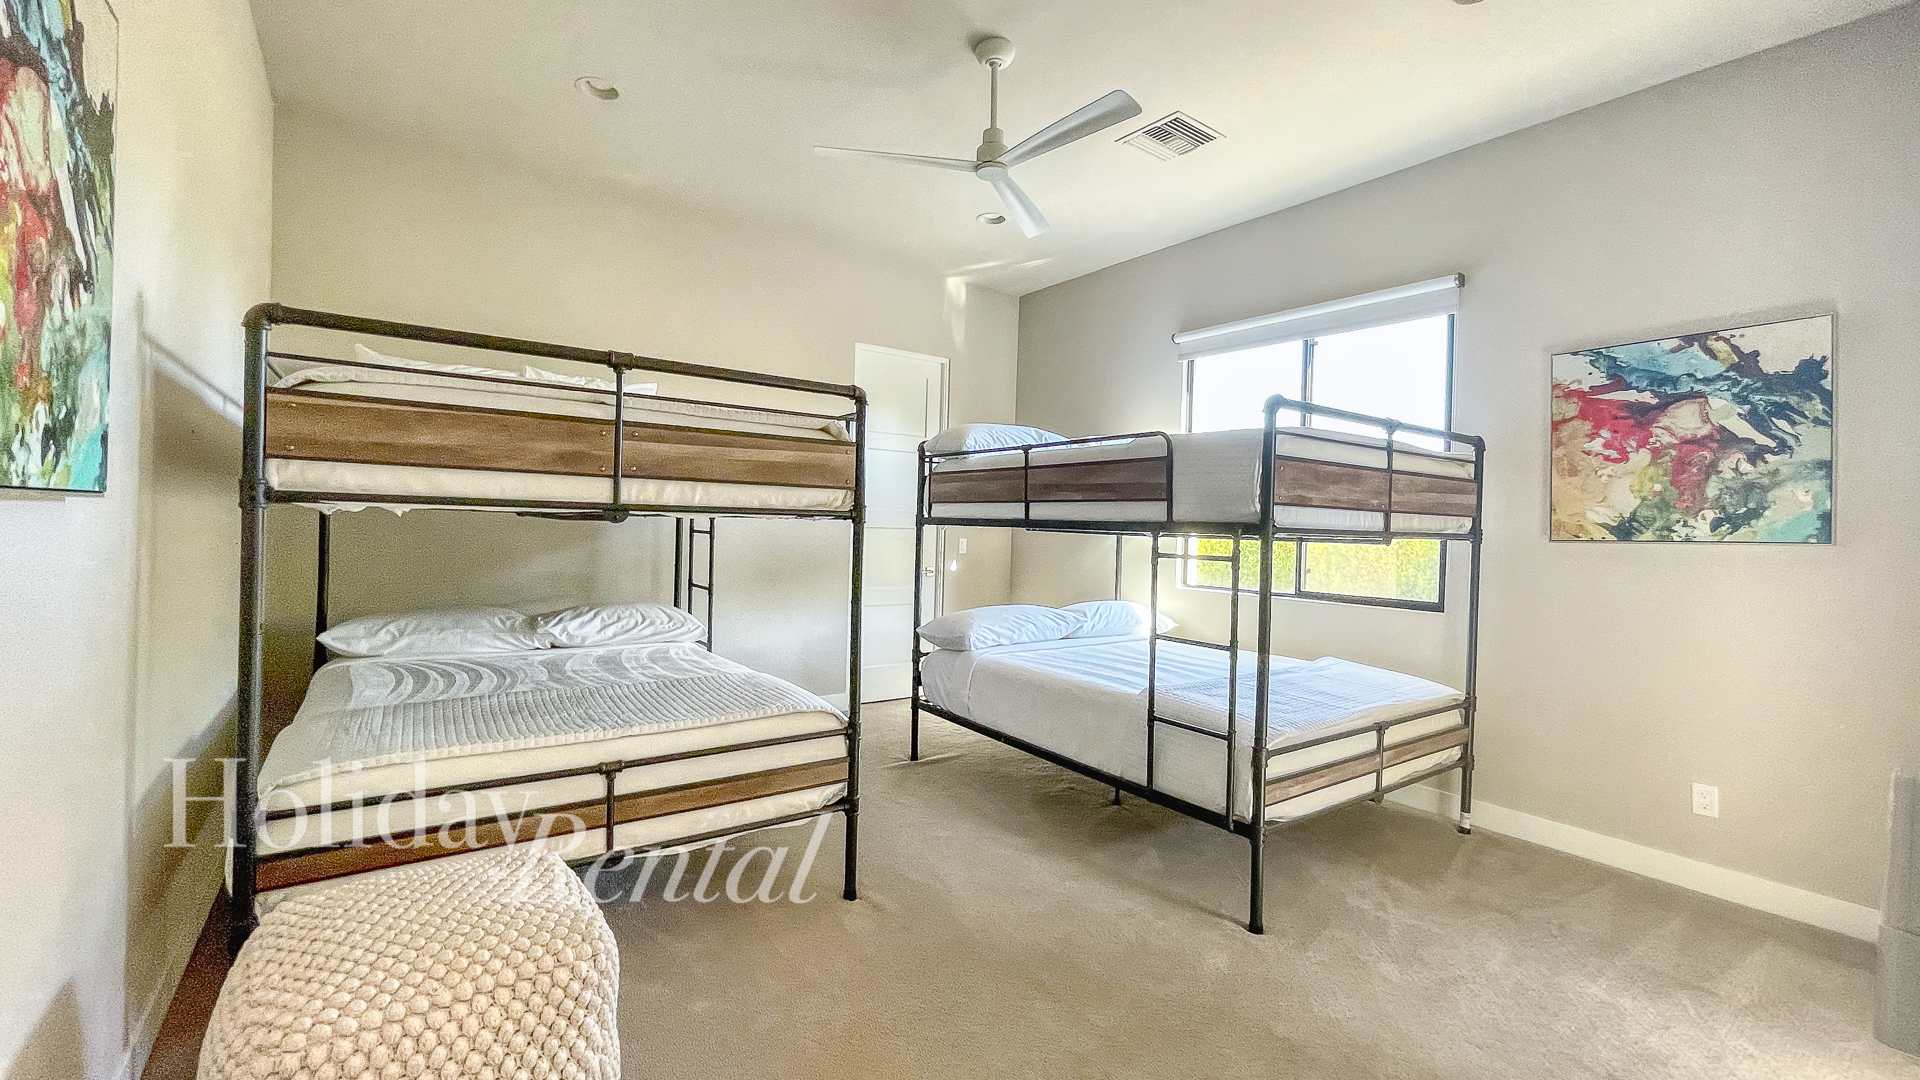 Bedroom 4 - Four queen beds as two bunk beds and en suite bathroom